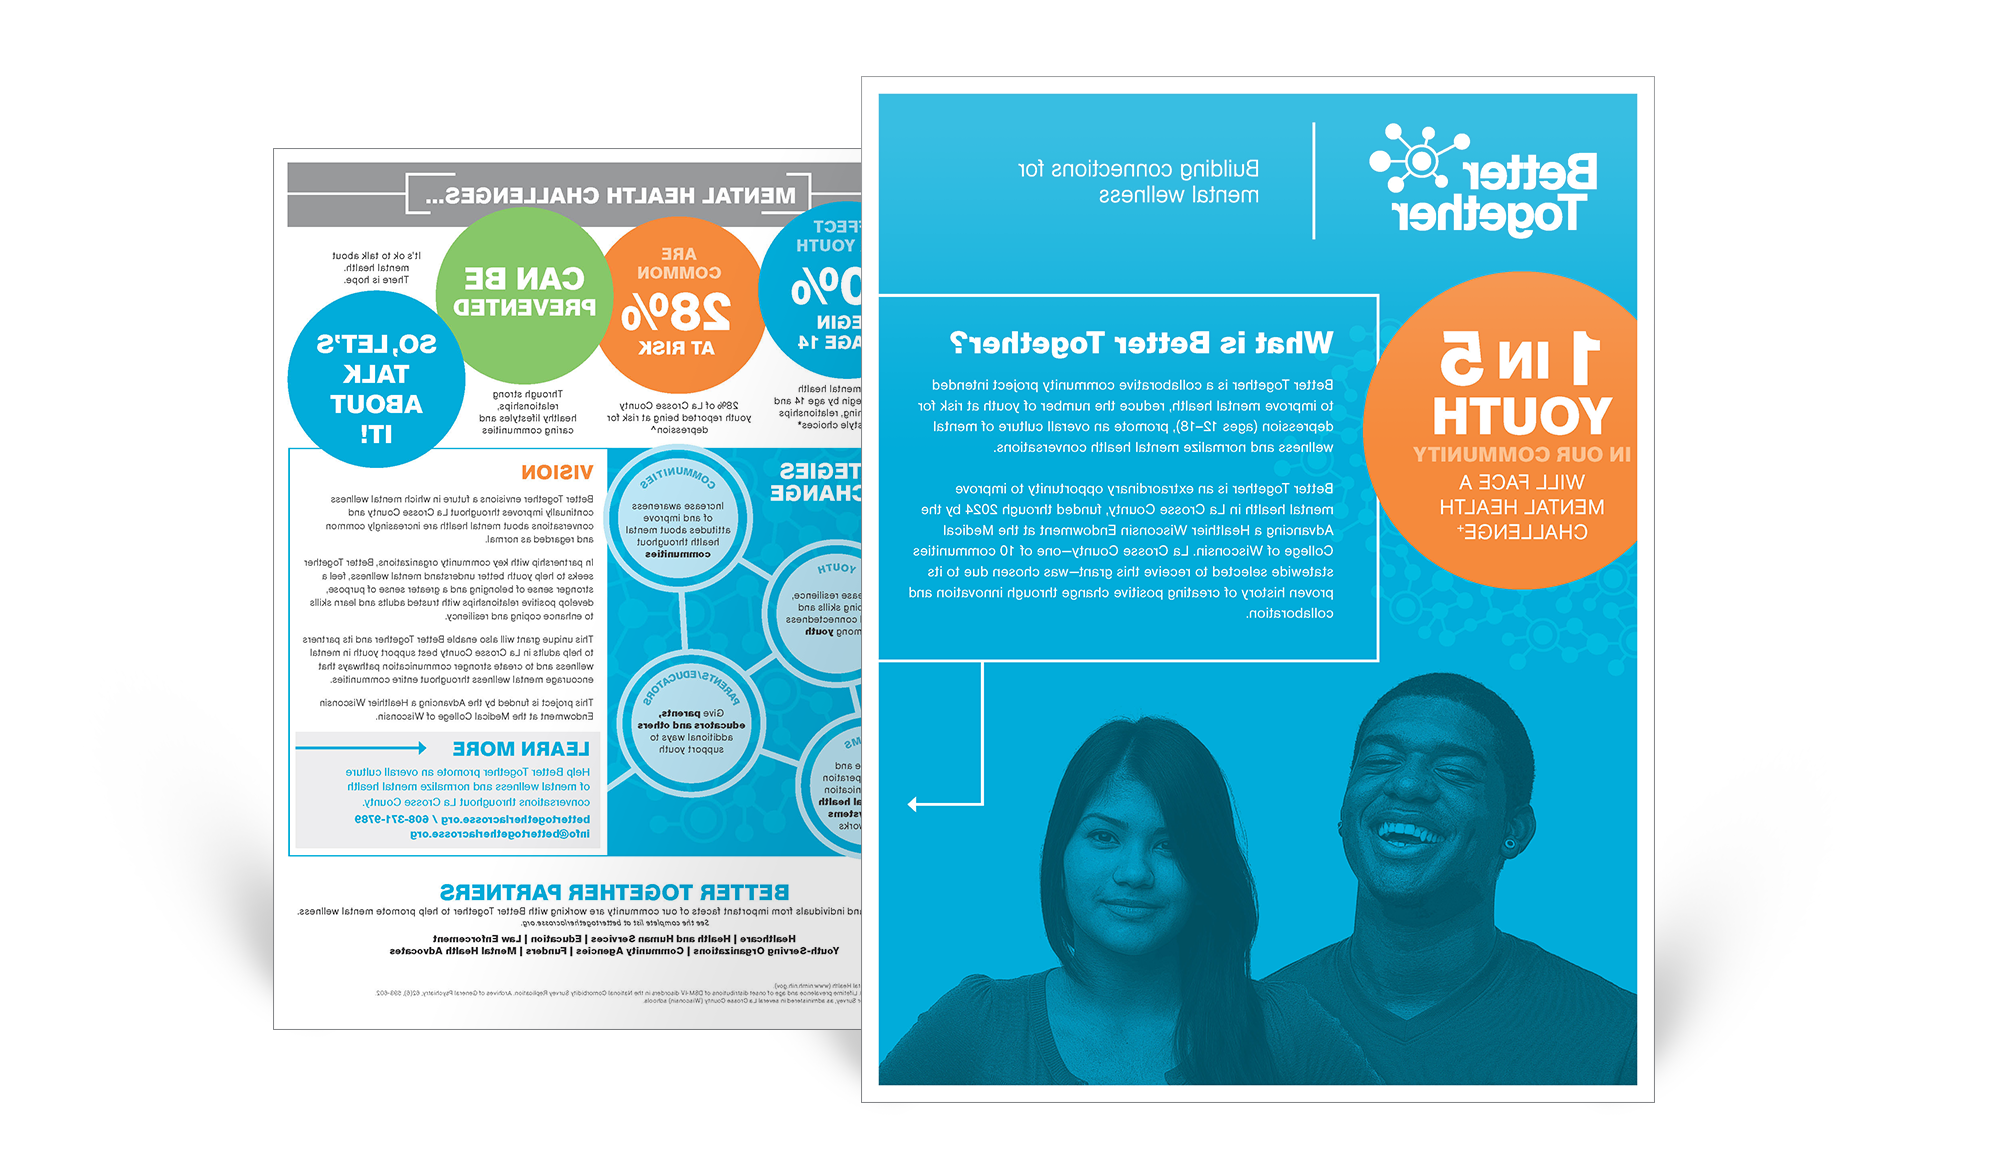 Better Together四色事实表，描述项目目标和愿景, 以及心理健康的挑战和策略